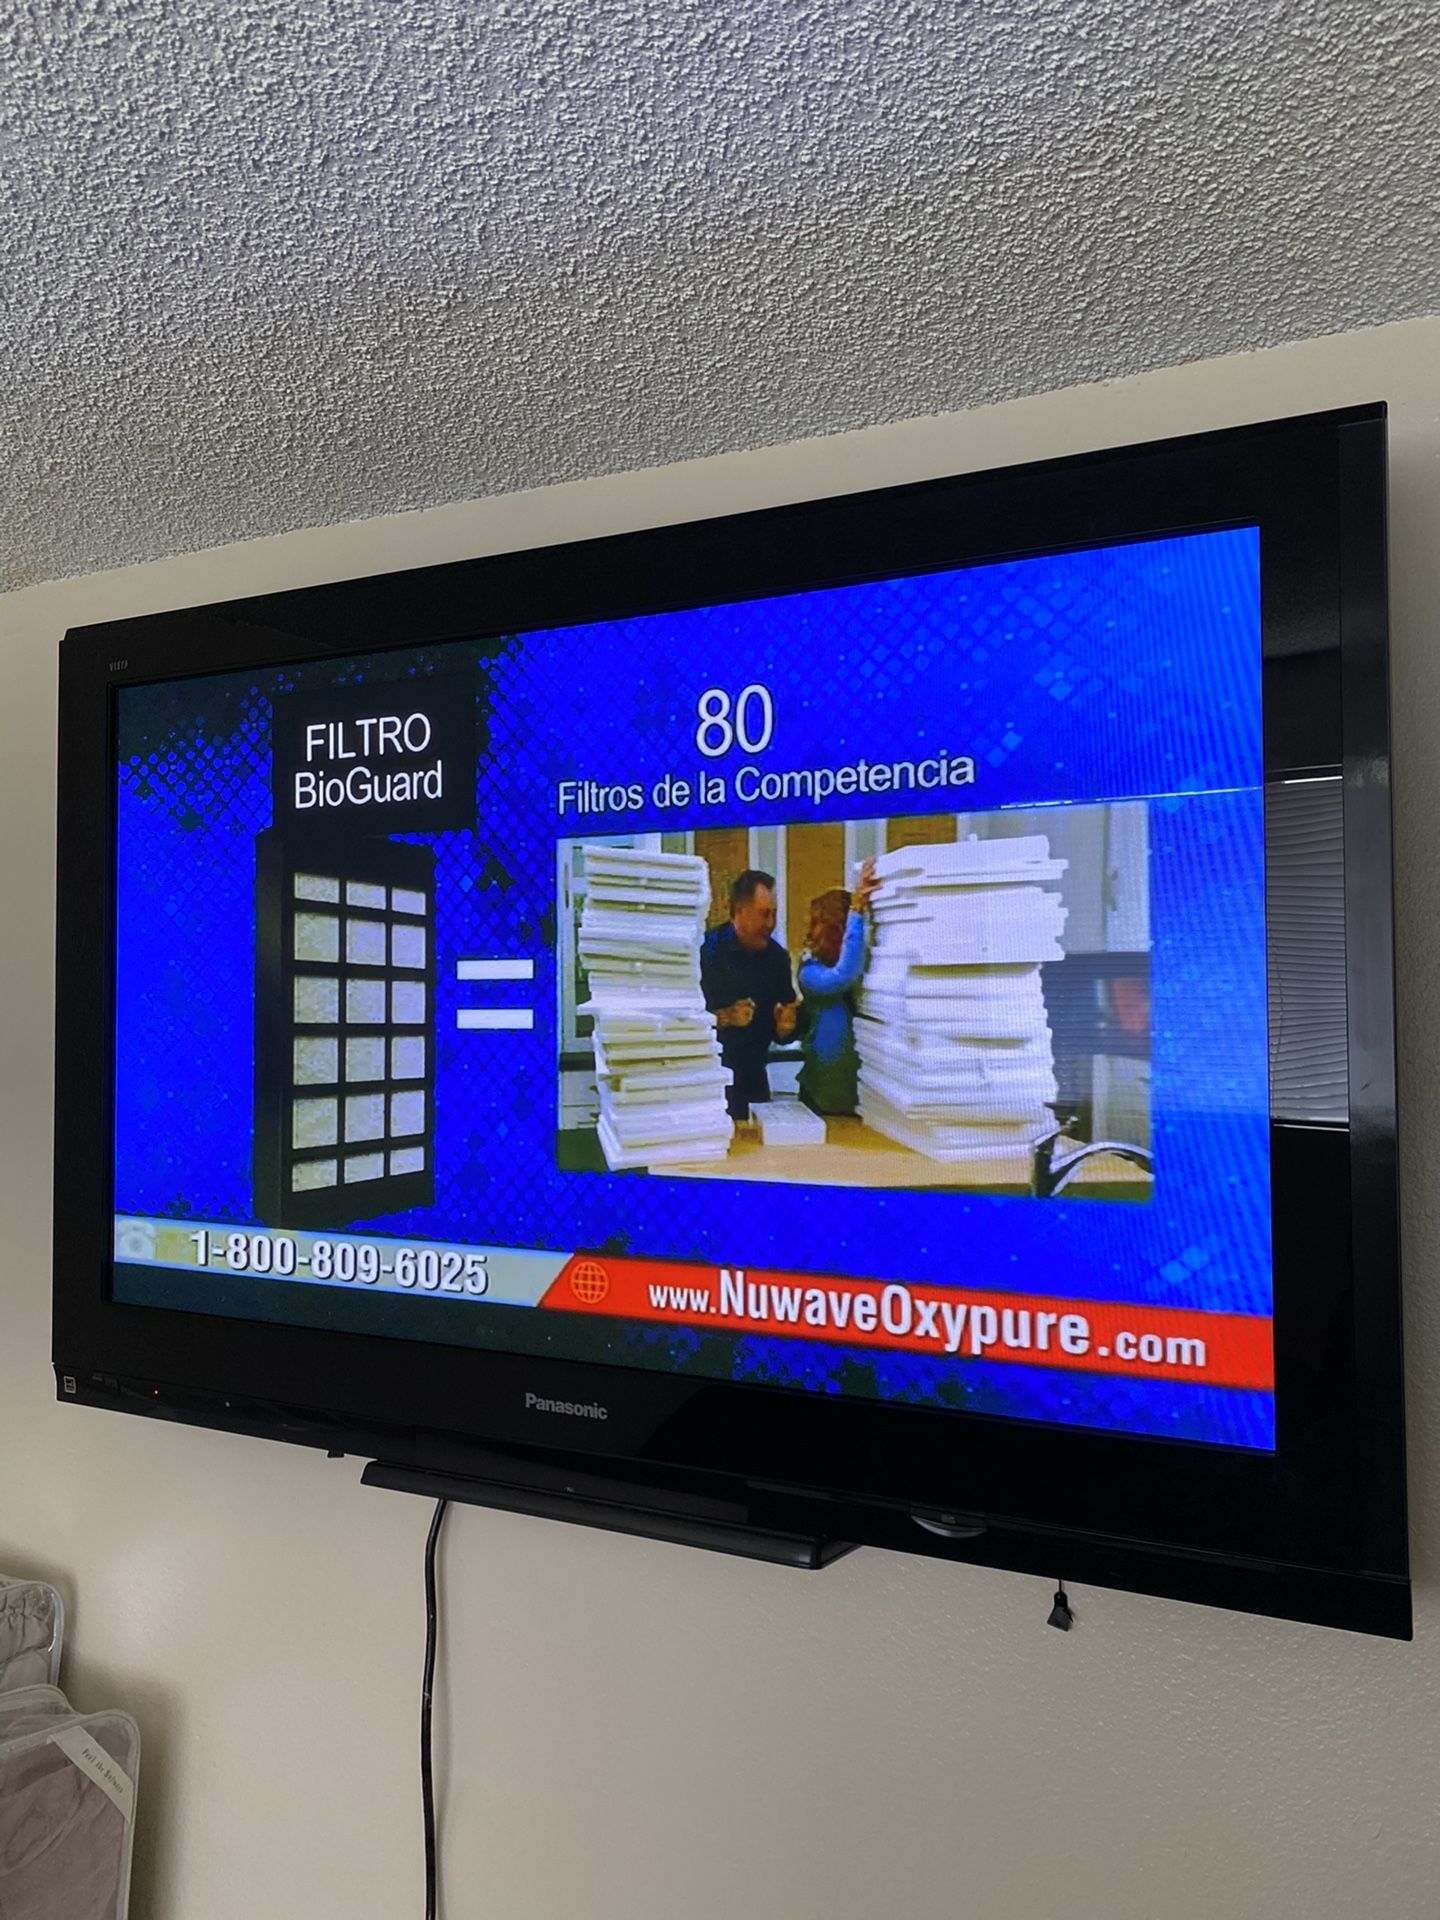 50” Panasonic TV